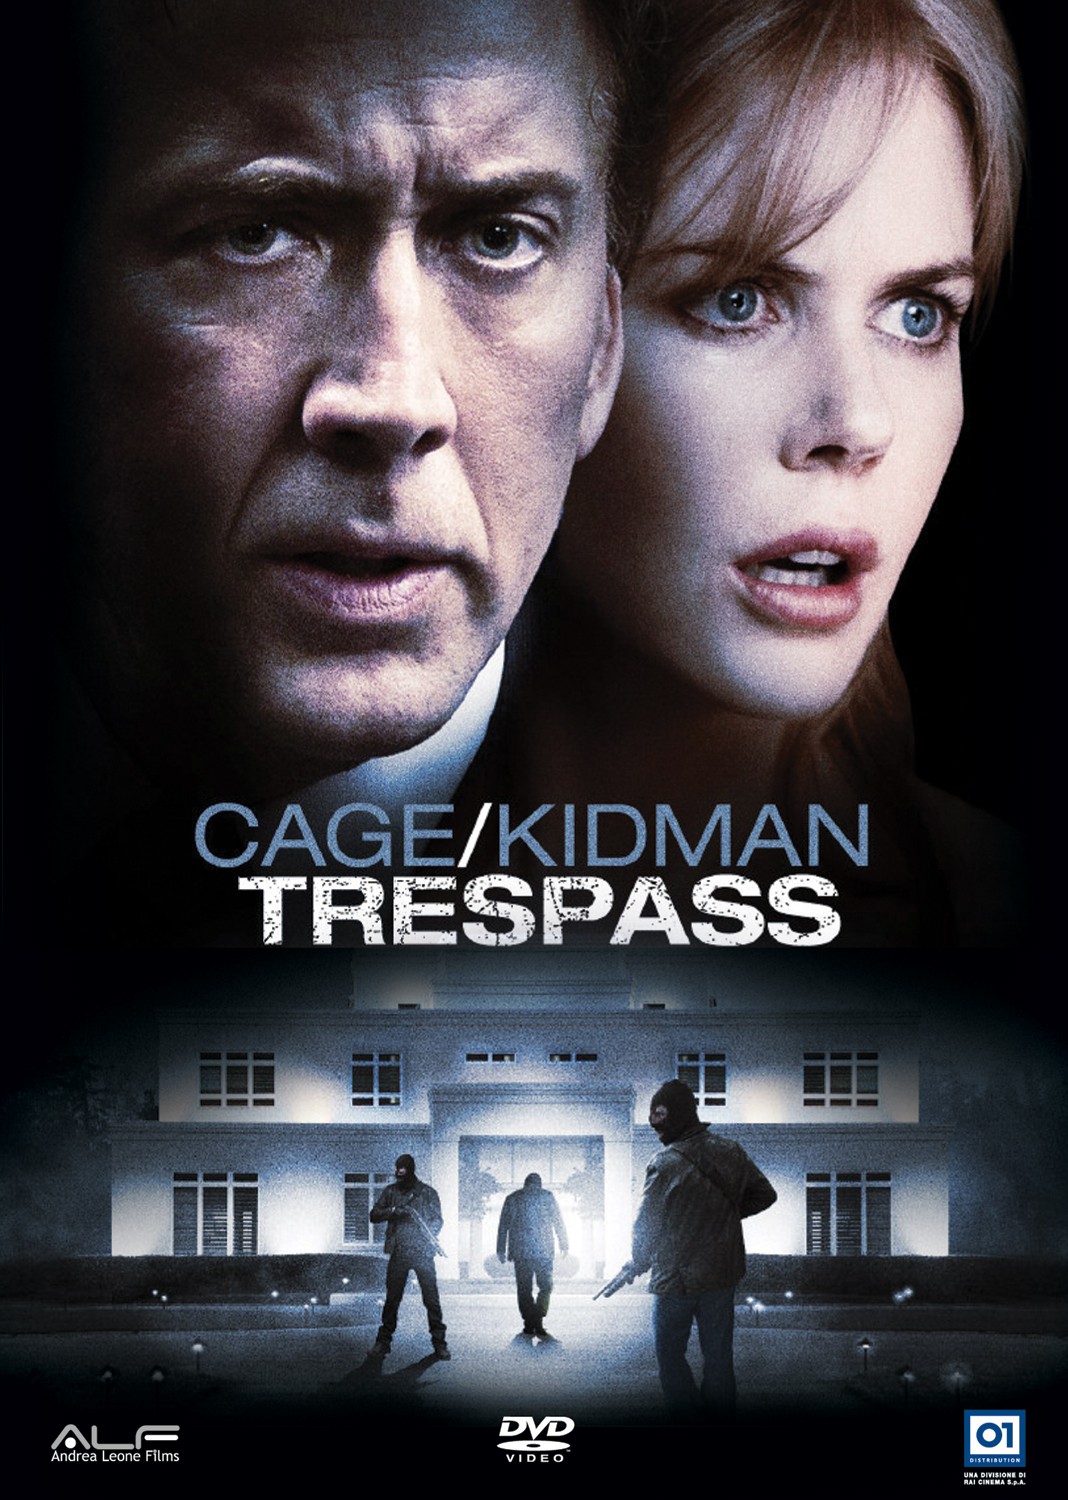 ดูหนังใหม่ ดูหนังออนไลน์ไม่มีสะดุด Trespass 2011 ปล้นแหวกนรก